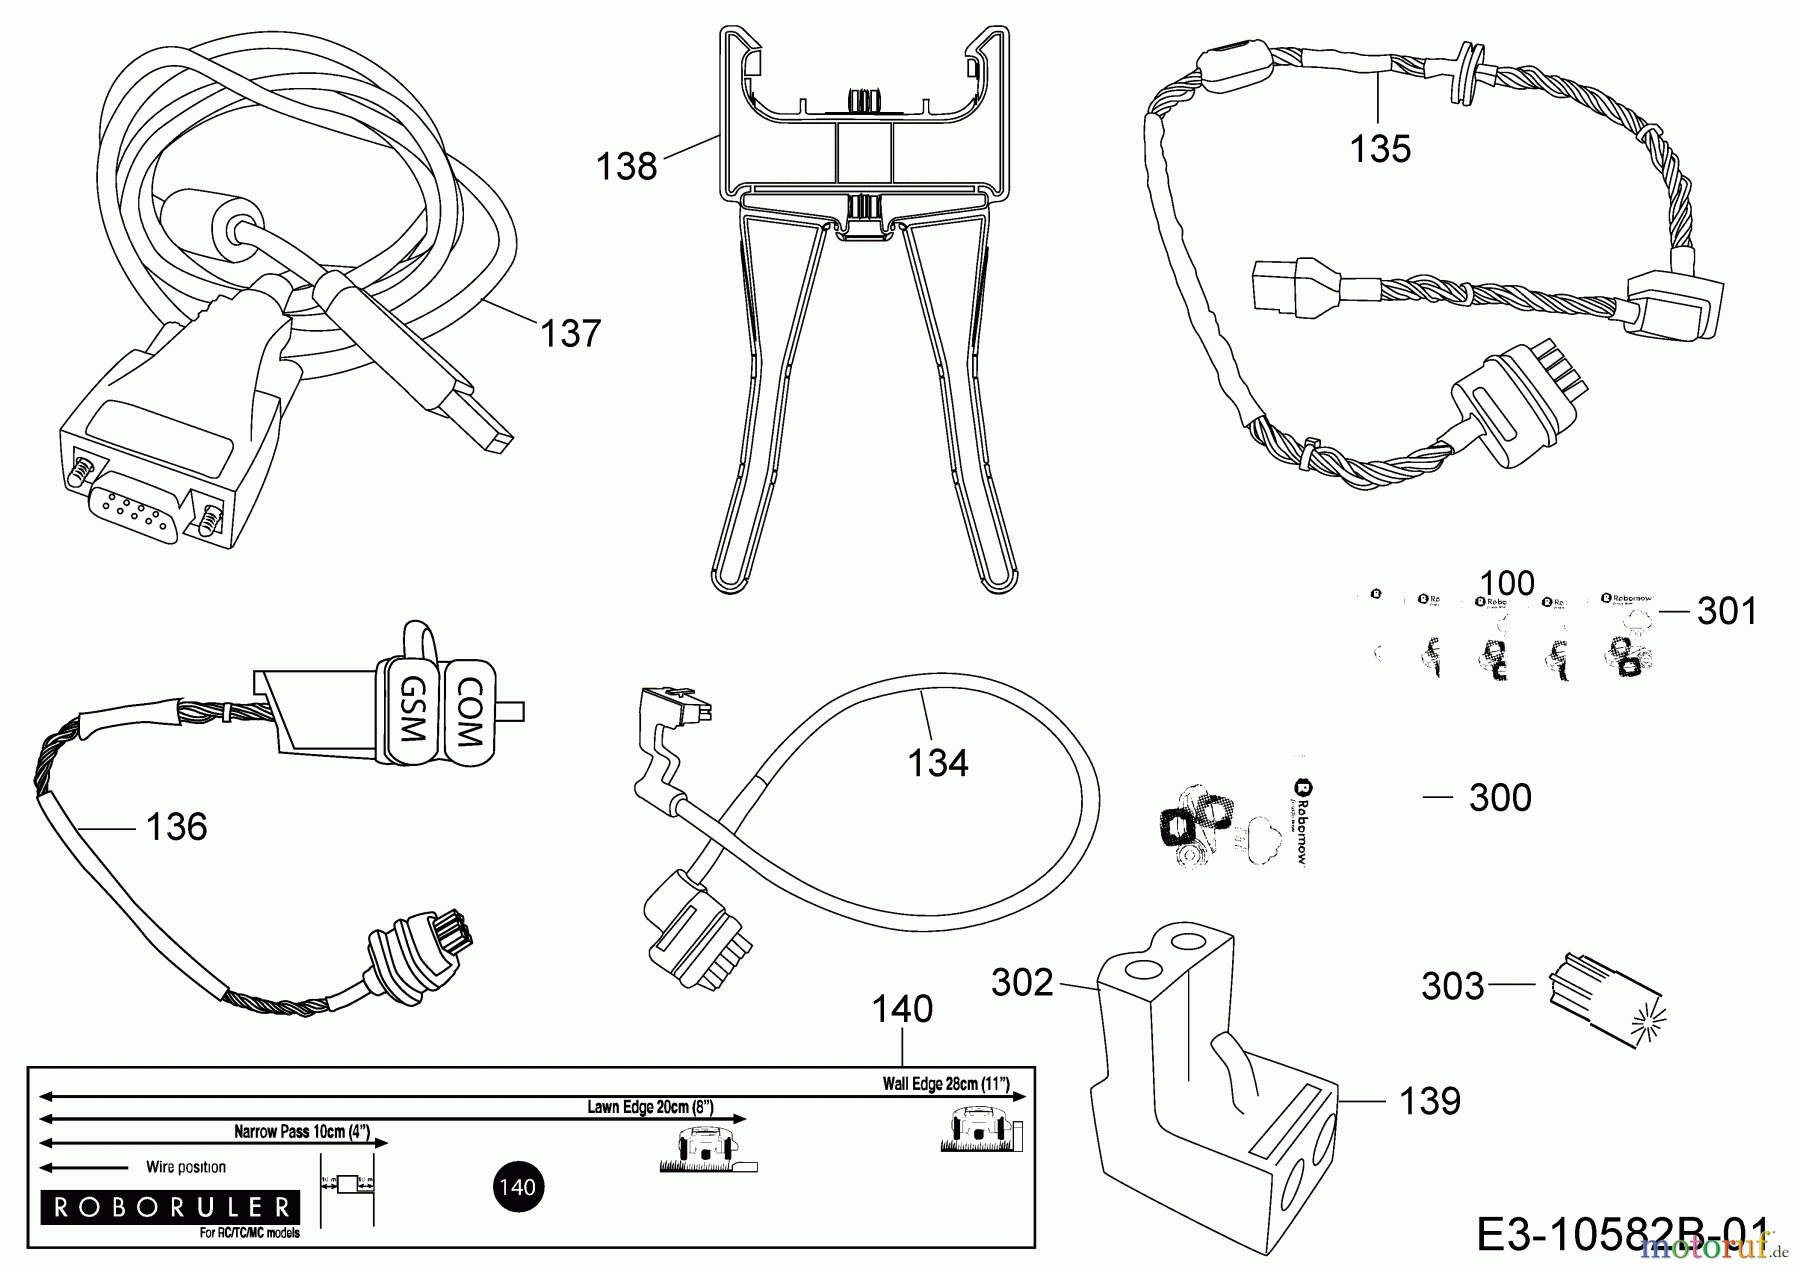  Robomow Mähroboter RC312U (White) PRD7012YW1  (2017) Kabel, Kabelanschluß, Regensensor, Werkzeug